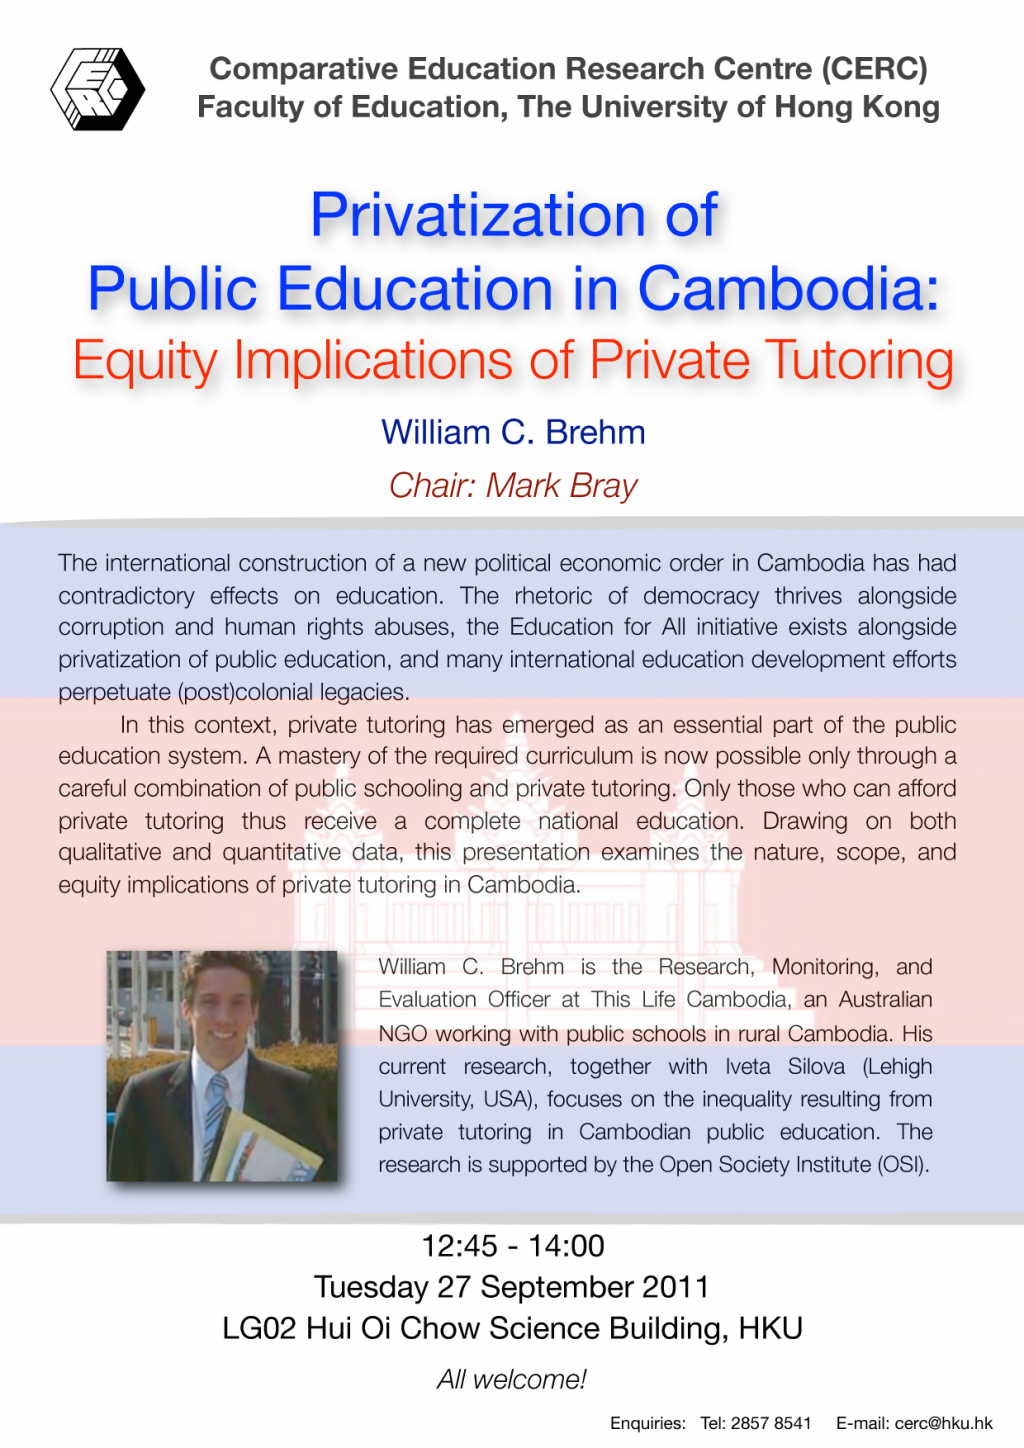 Seminar: Privatization of Public Education in Cambodia